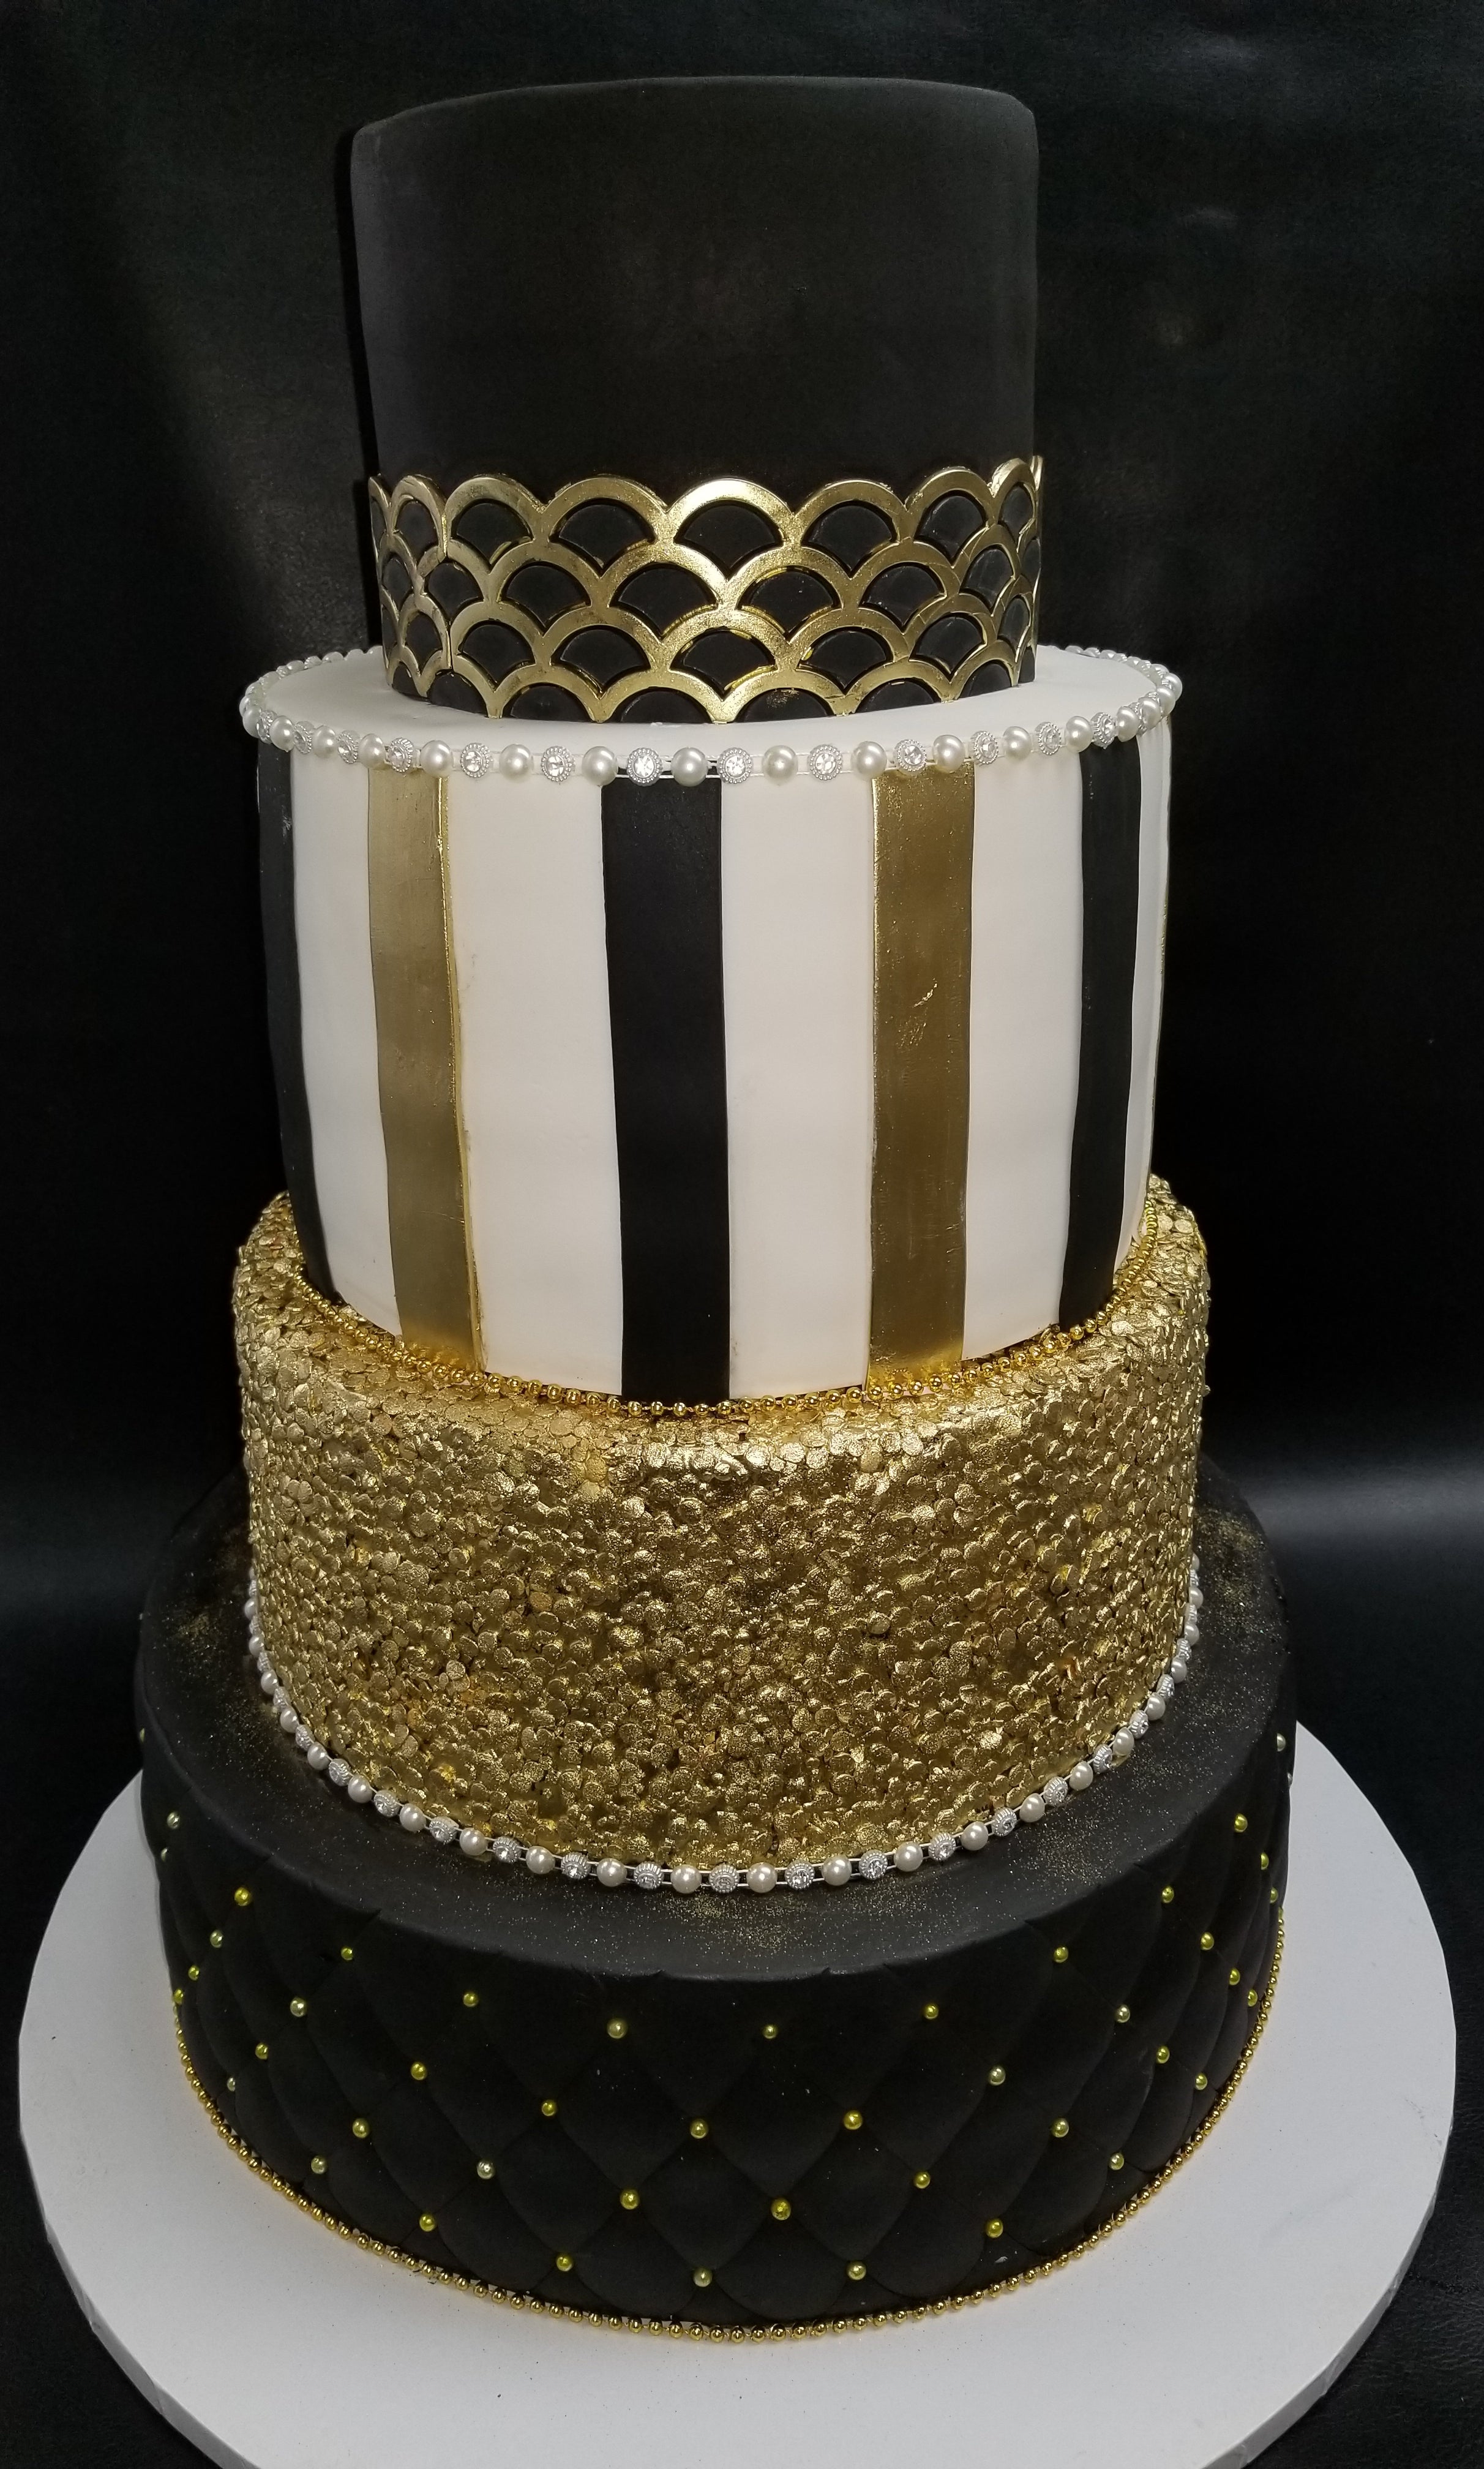 Gold and black theme cake - Decorated Cake by Samyukta - CakesDecor